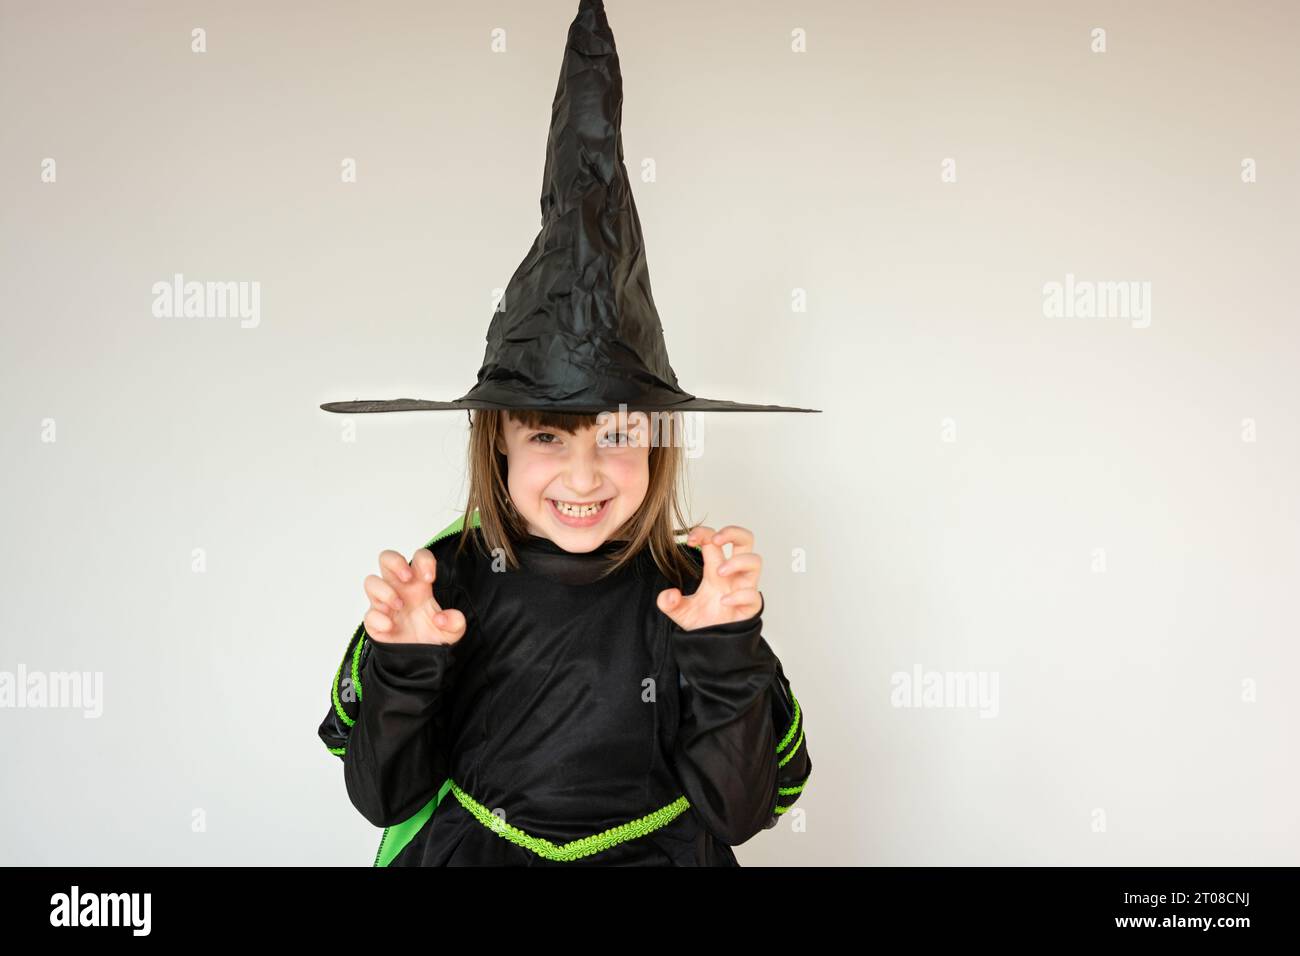 Costumi divertenti immagini e fotografie stock ad alta risoluzione - Alamy